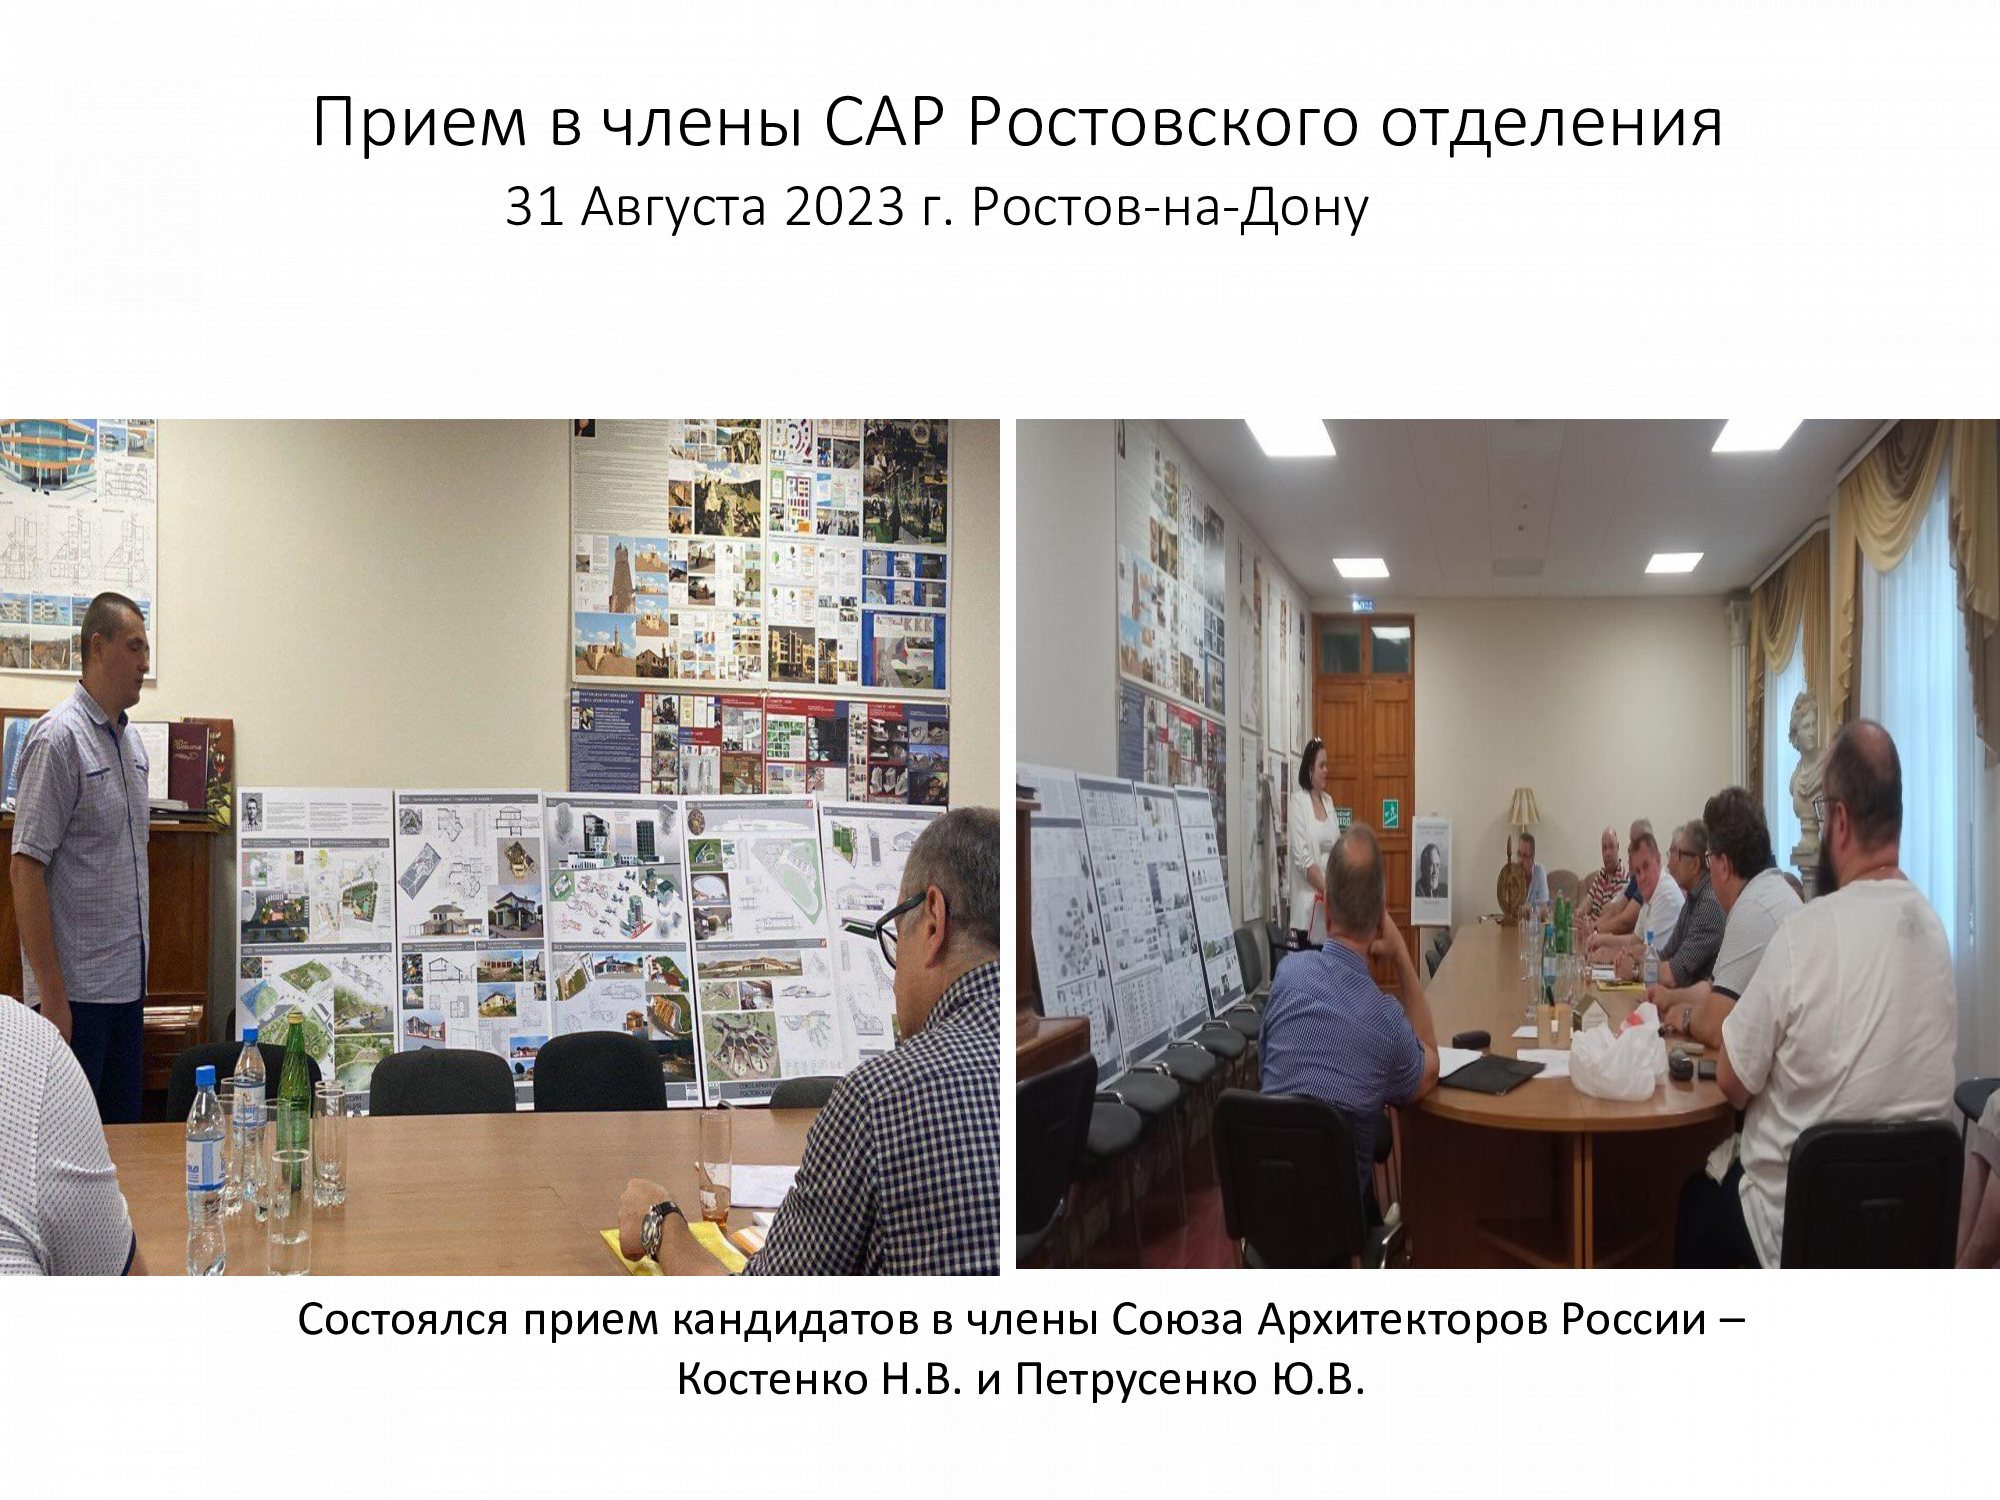 Члены Градостроительного совета приняли участие в Xvi Съезде Союза архитекторов России